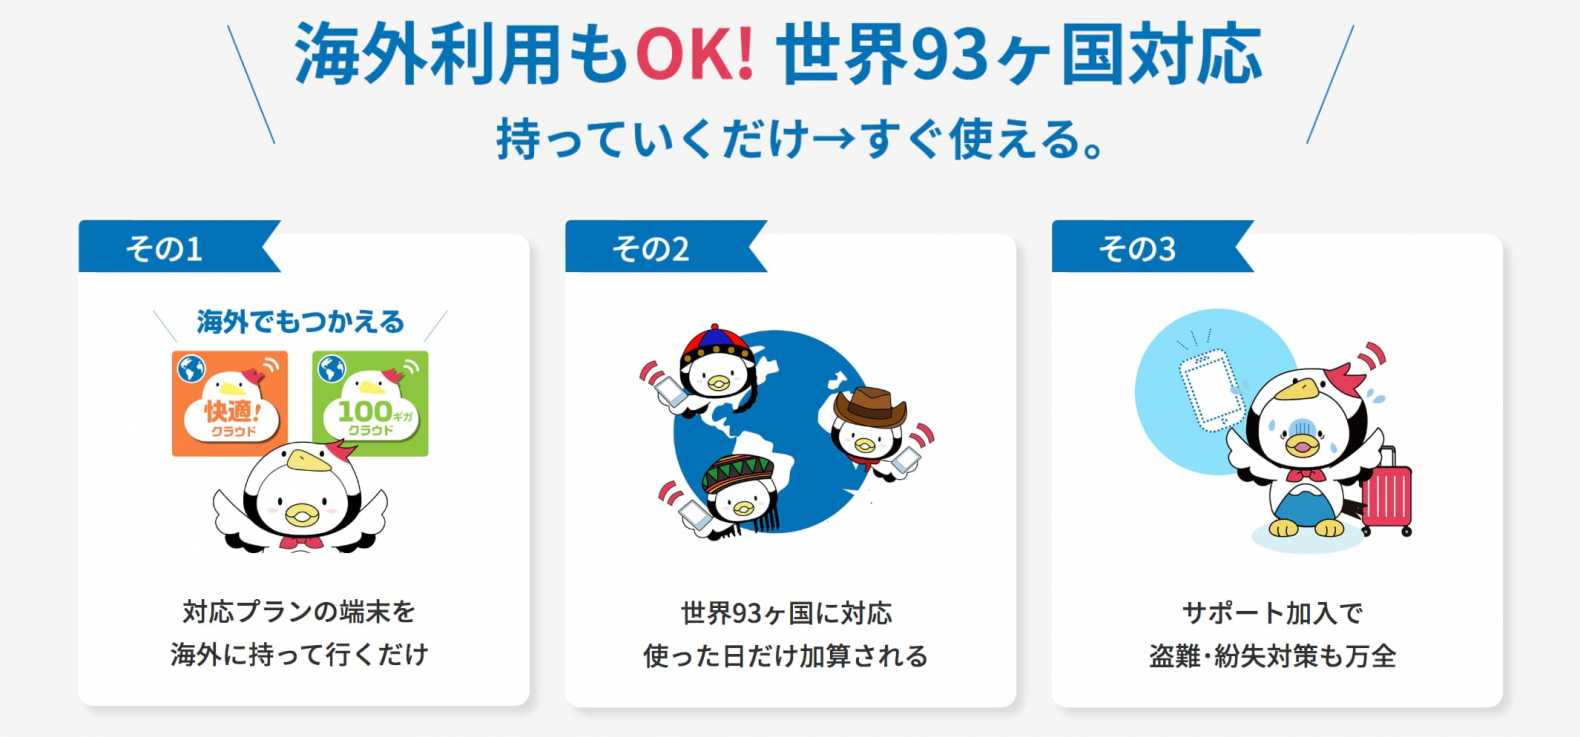  海外でのご利用について - FUJI-Wifi Official - fuji-wifi.jp